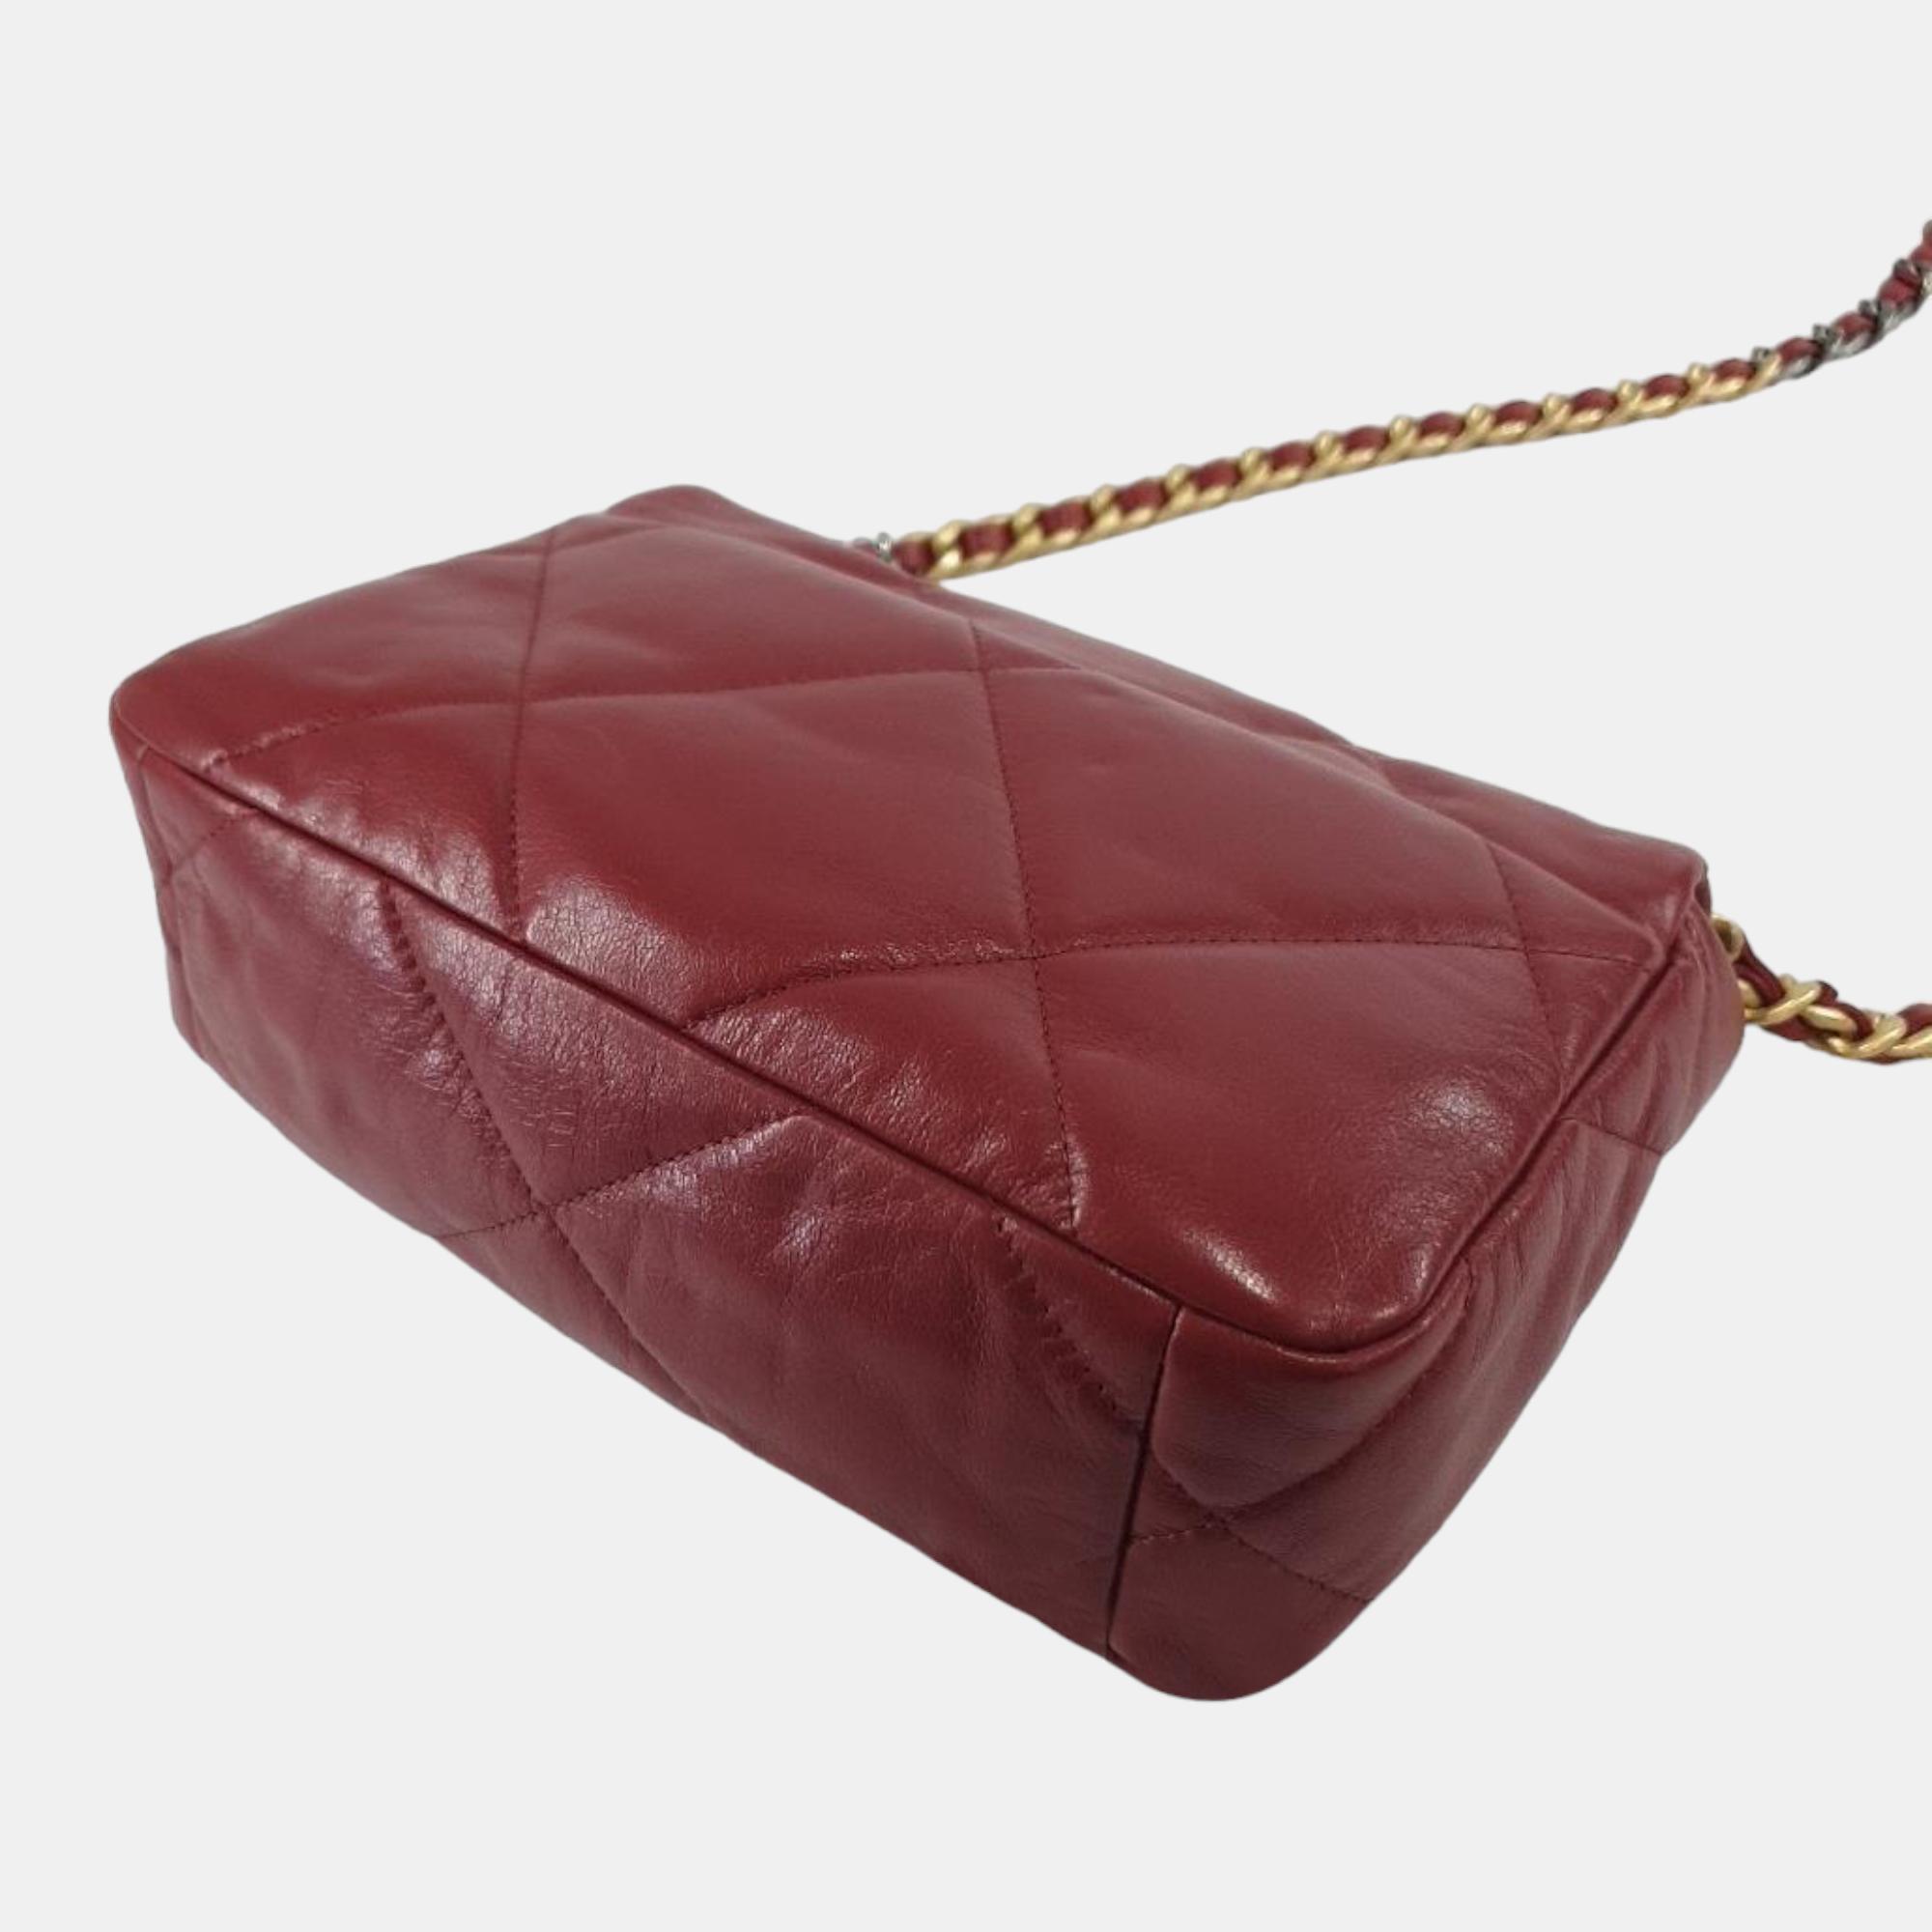 Chanel Black Patent Leather Large 19 Flap Shoulder Bag